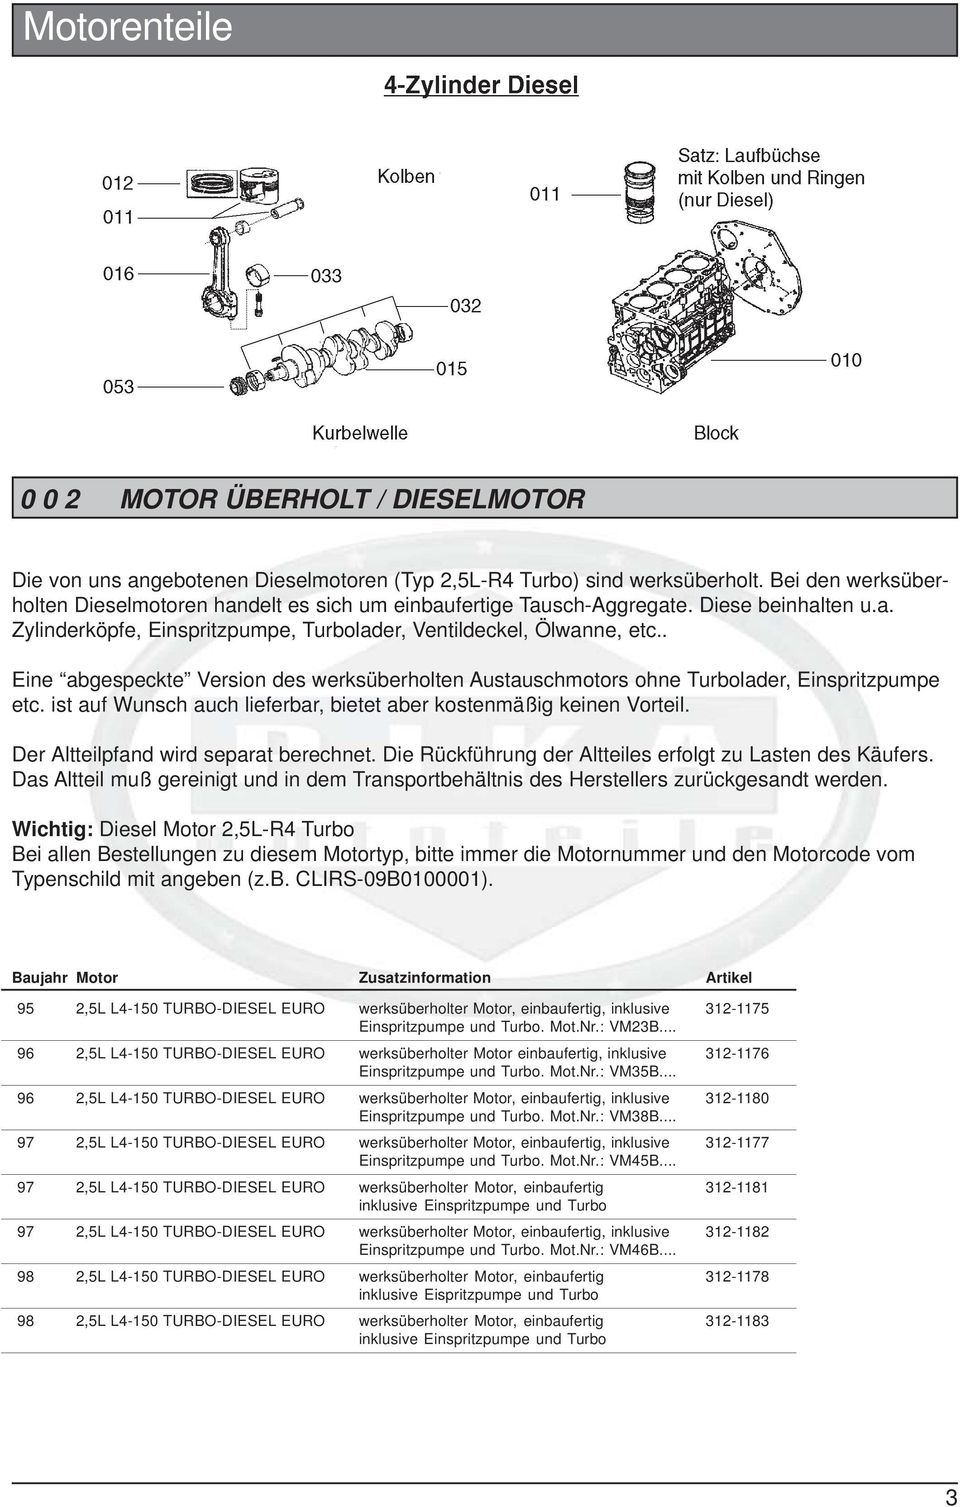 Kolbenringkompressor -BUZZETTI- Ø=45-90mm -Montagewerkzeug um den Kolben in  den Zylinder einzuführen, Werkzeuge, Werkzeug, Motor